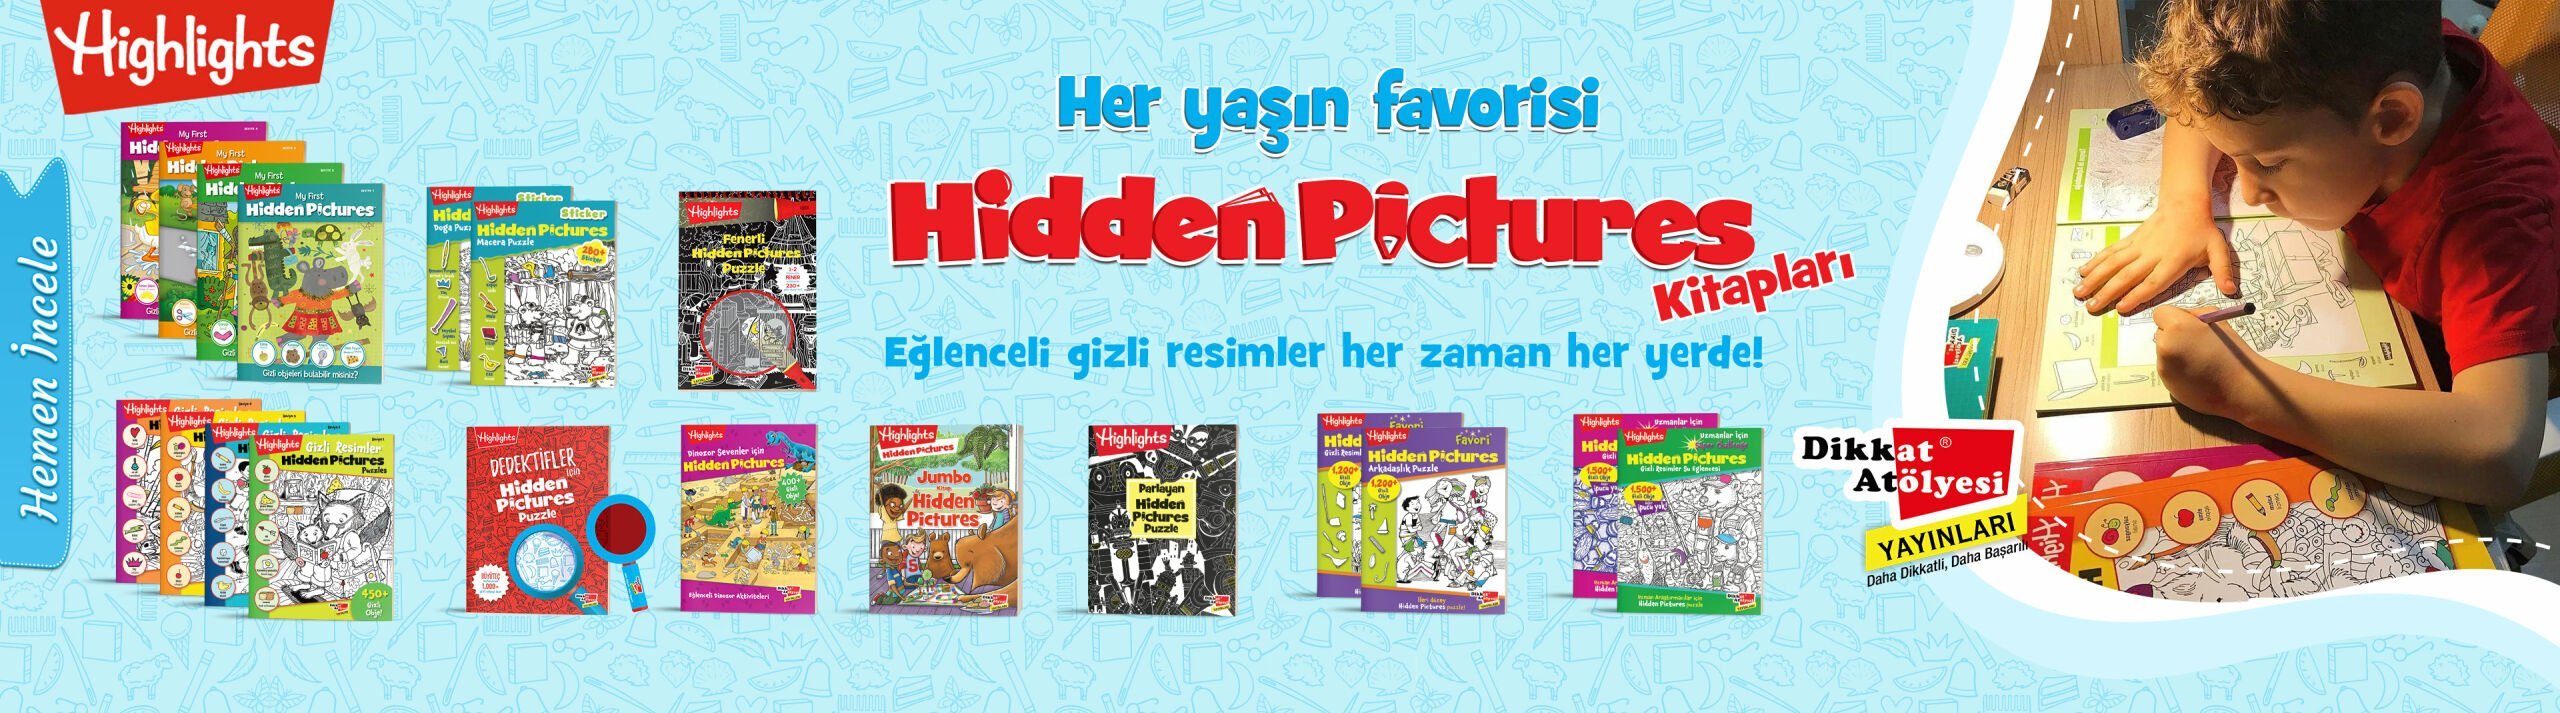 Hidden Pictures Kitapları